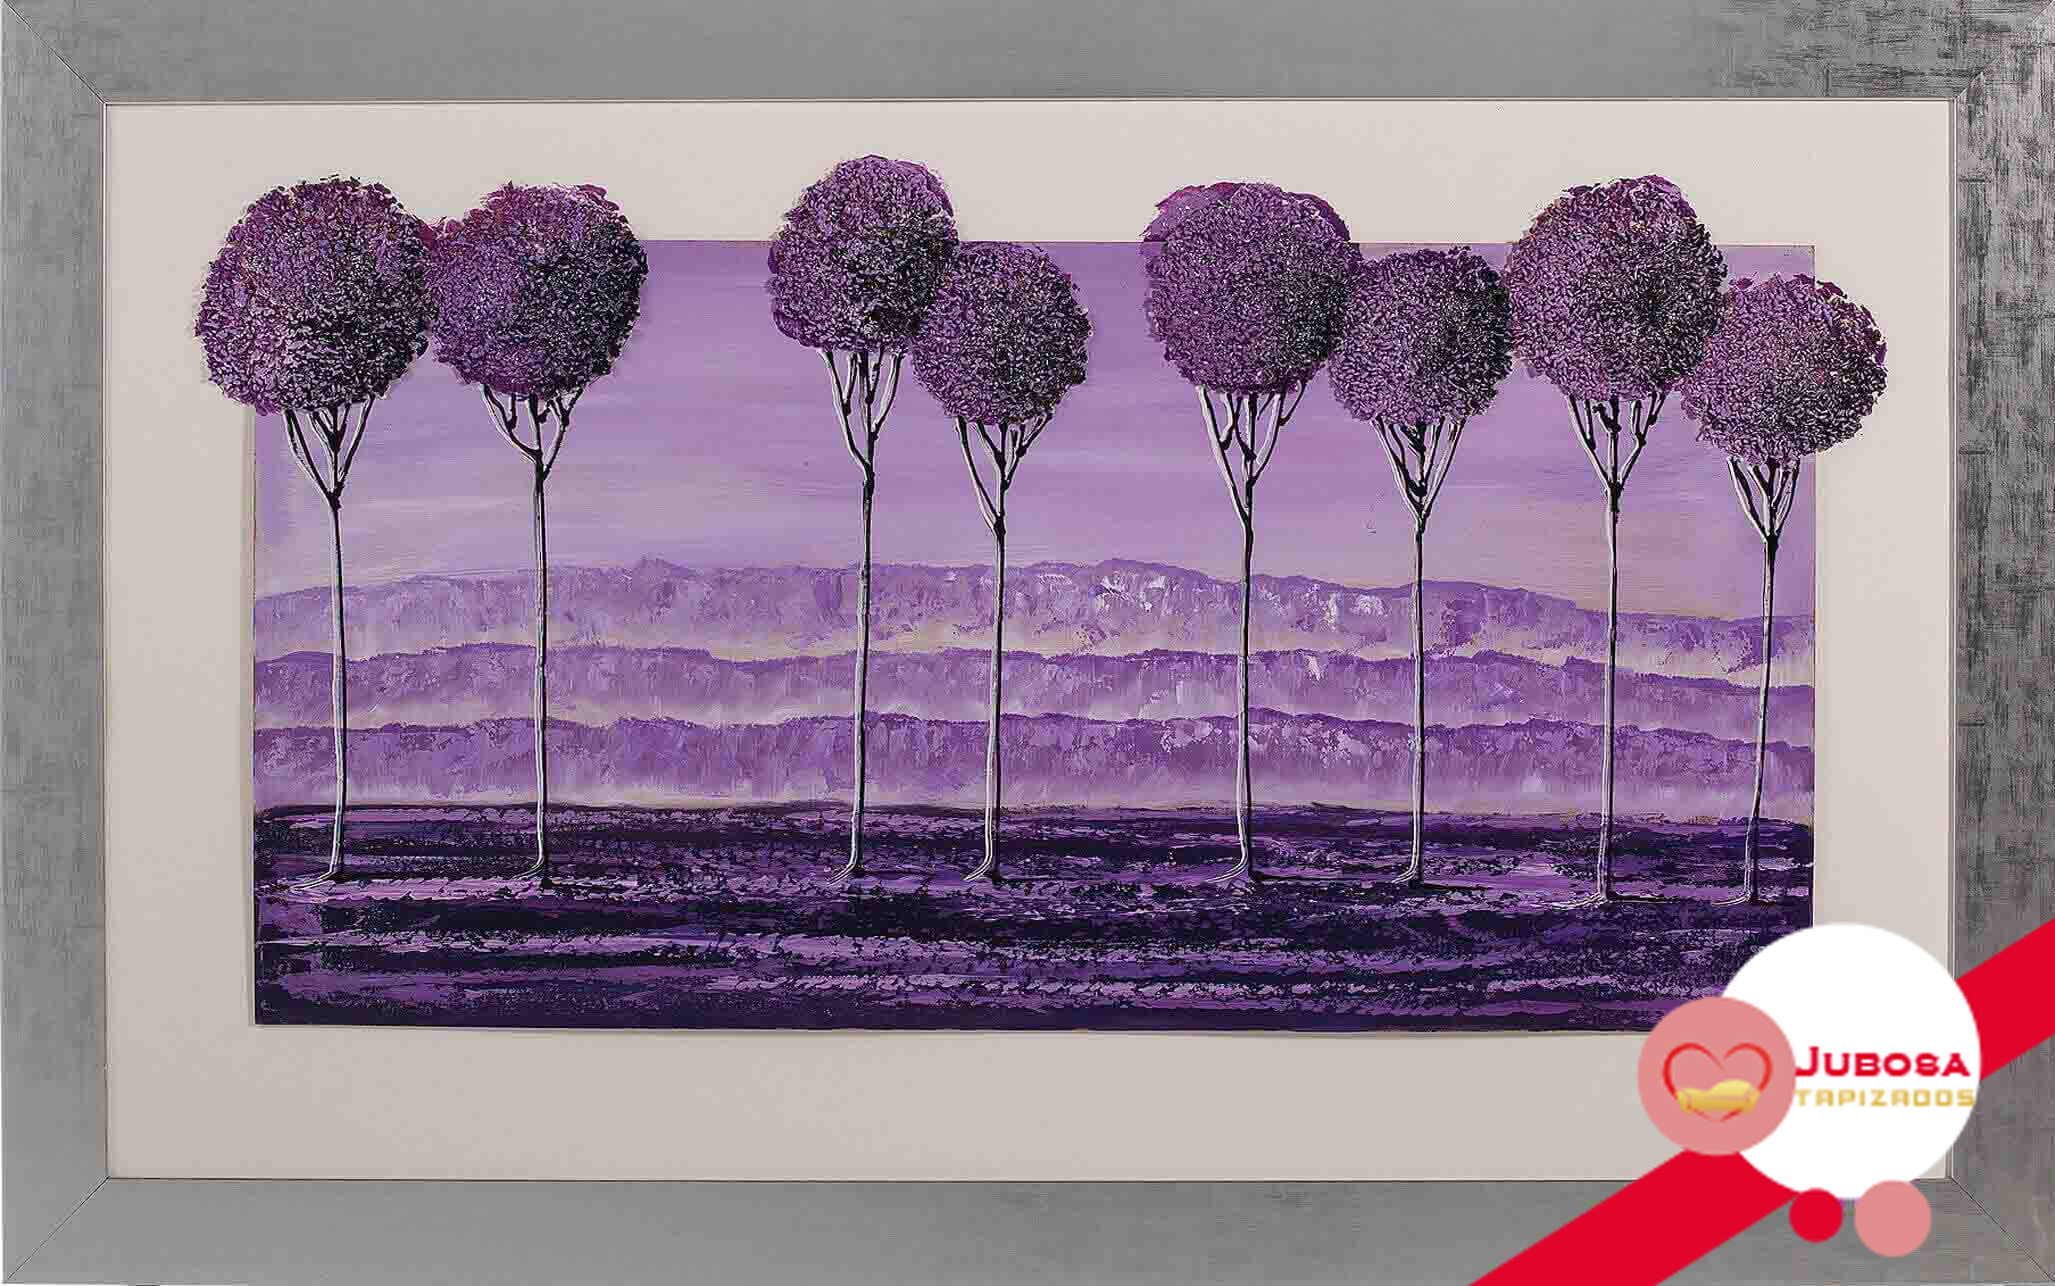 cuadro purpura tapizados jubosa